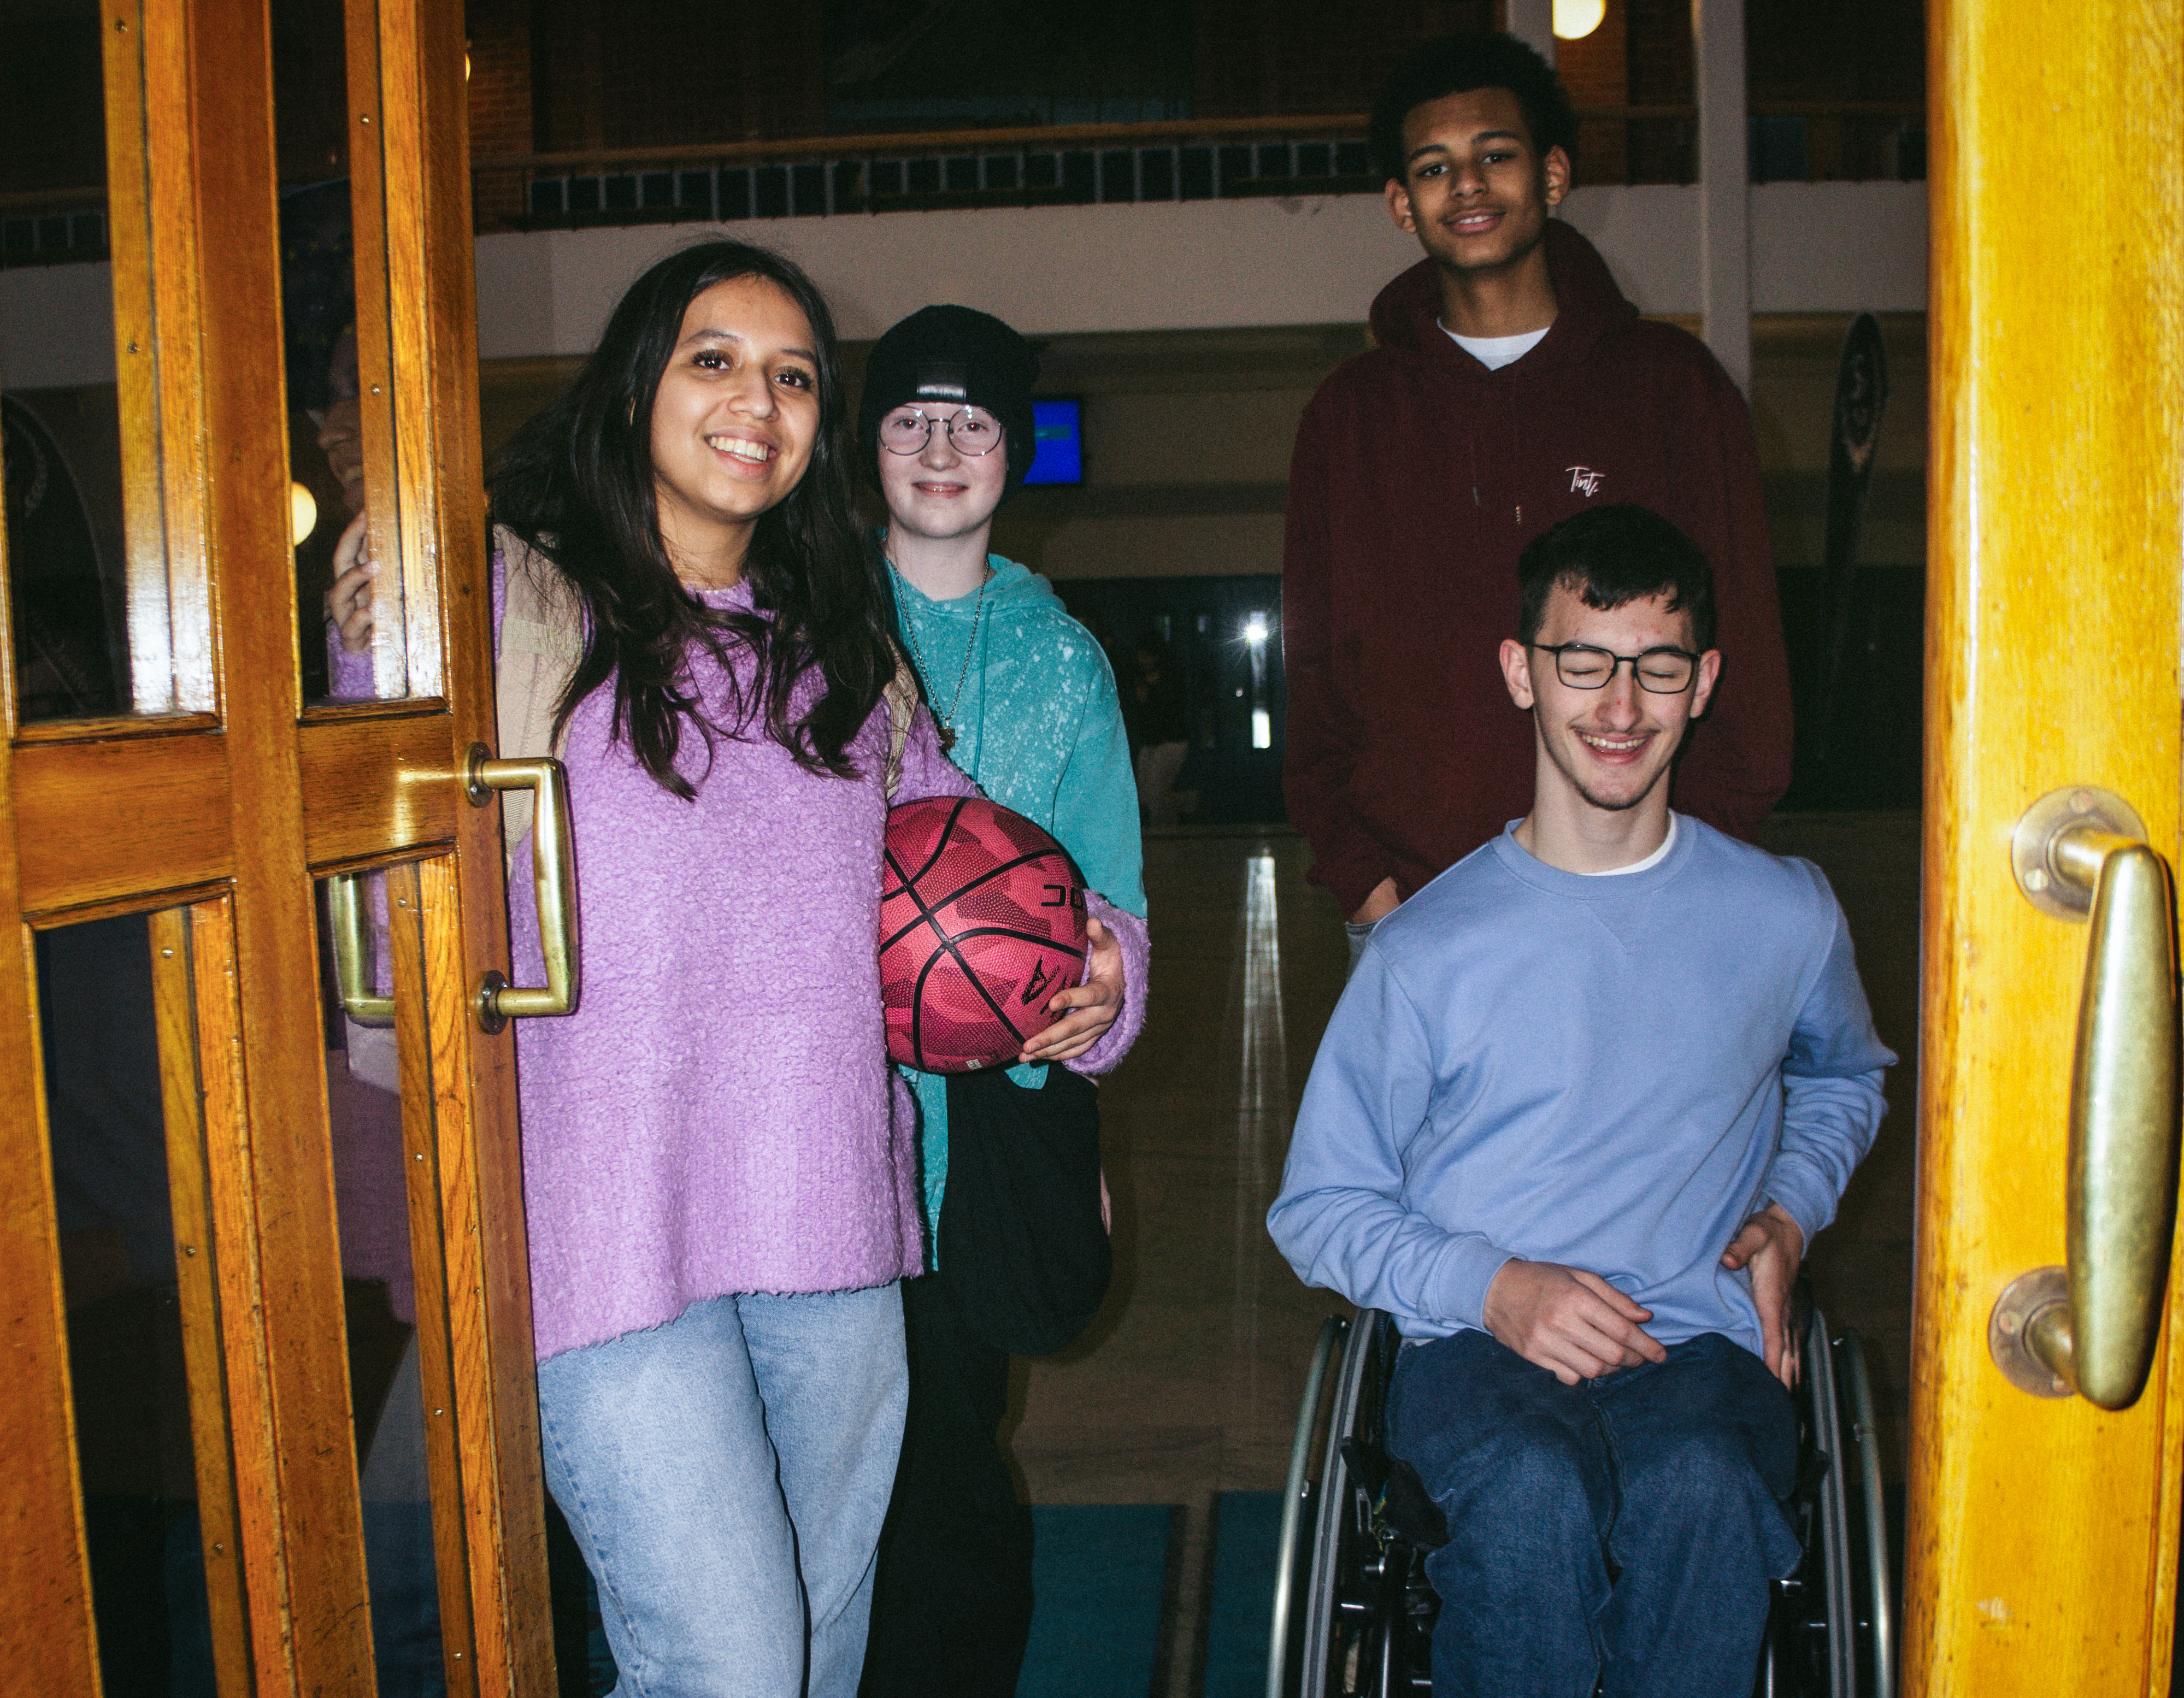 Fyra elever står i entrén till en idrottssal, varav en är rullstolsburen.